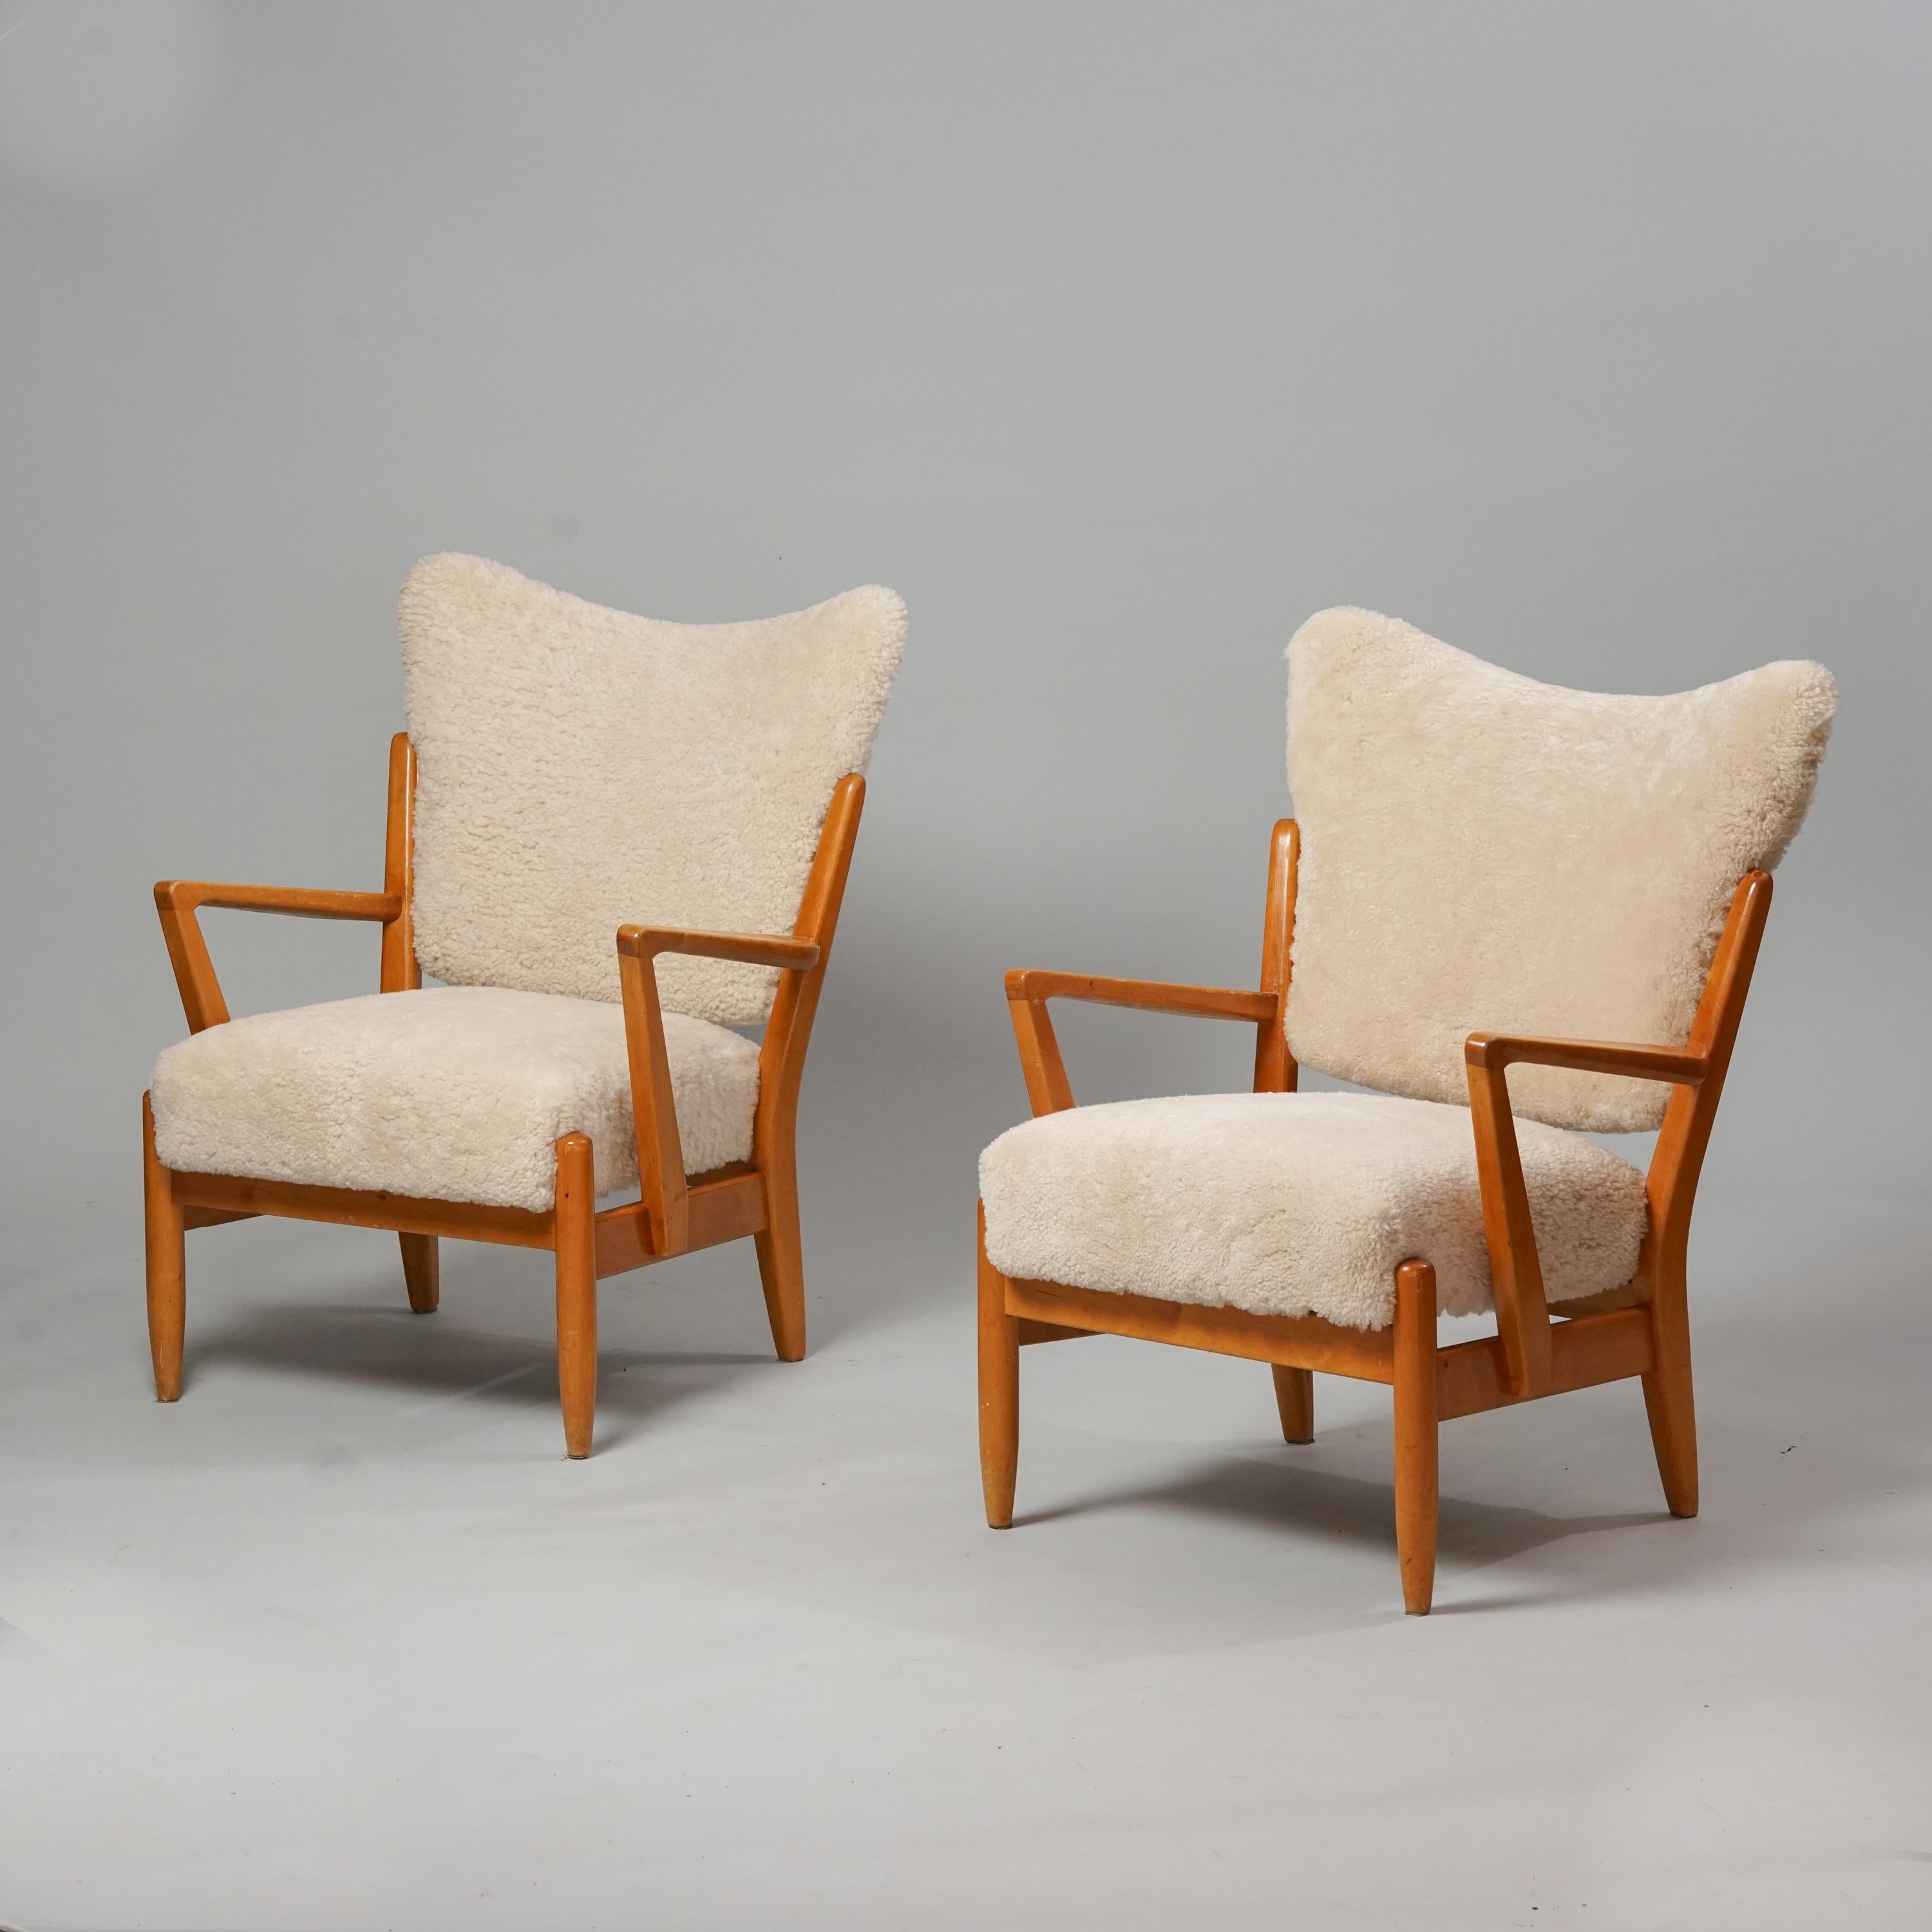 Scandinavian Modern Modell 2411 Sessel, hergestellt von Asko, 1950er Jahre. Gestell aus Birke, neue Schafslederpolsterung. Guter Vintage-Zustand, leichte Patina im Einklang mit Alter und Gebrauch. Die Sessel werden als Set verkauft. Klassischer